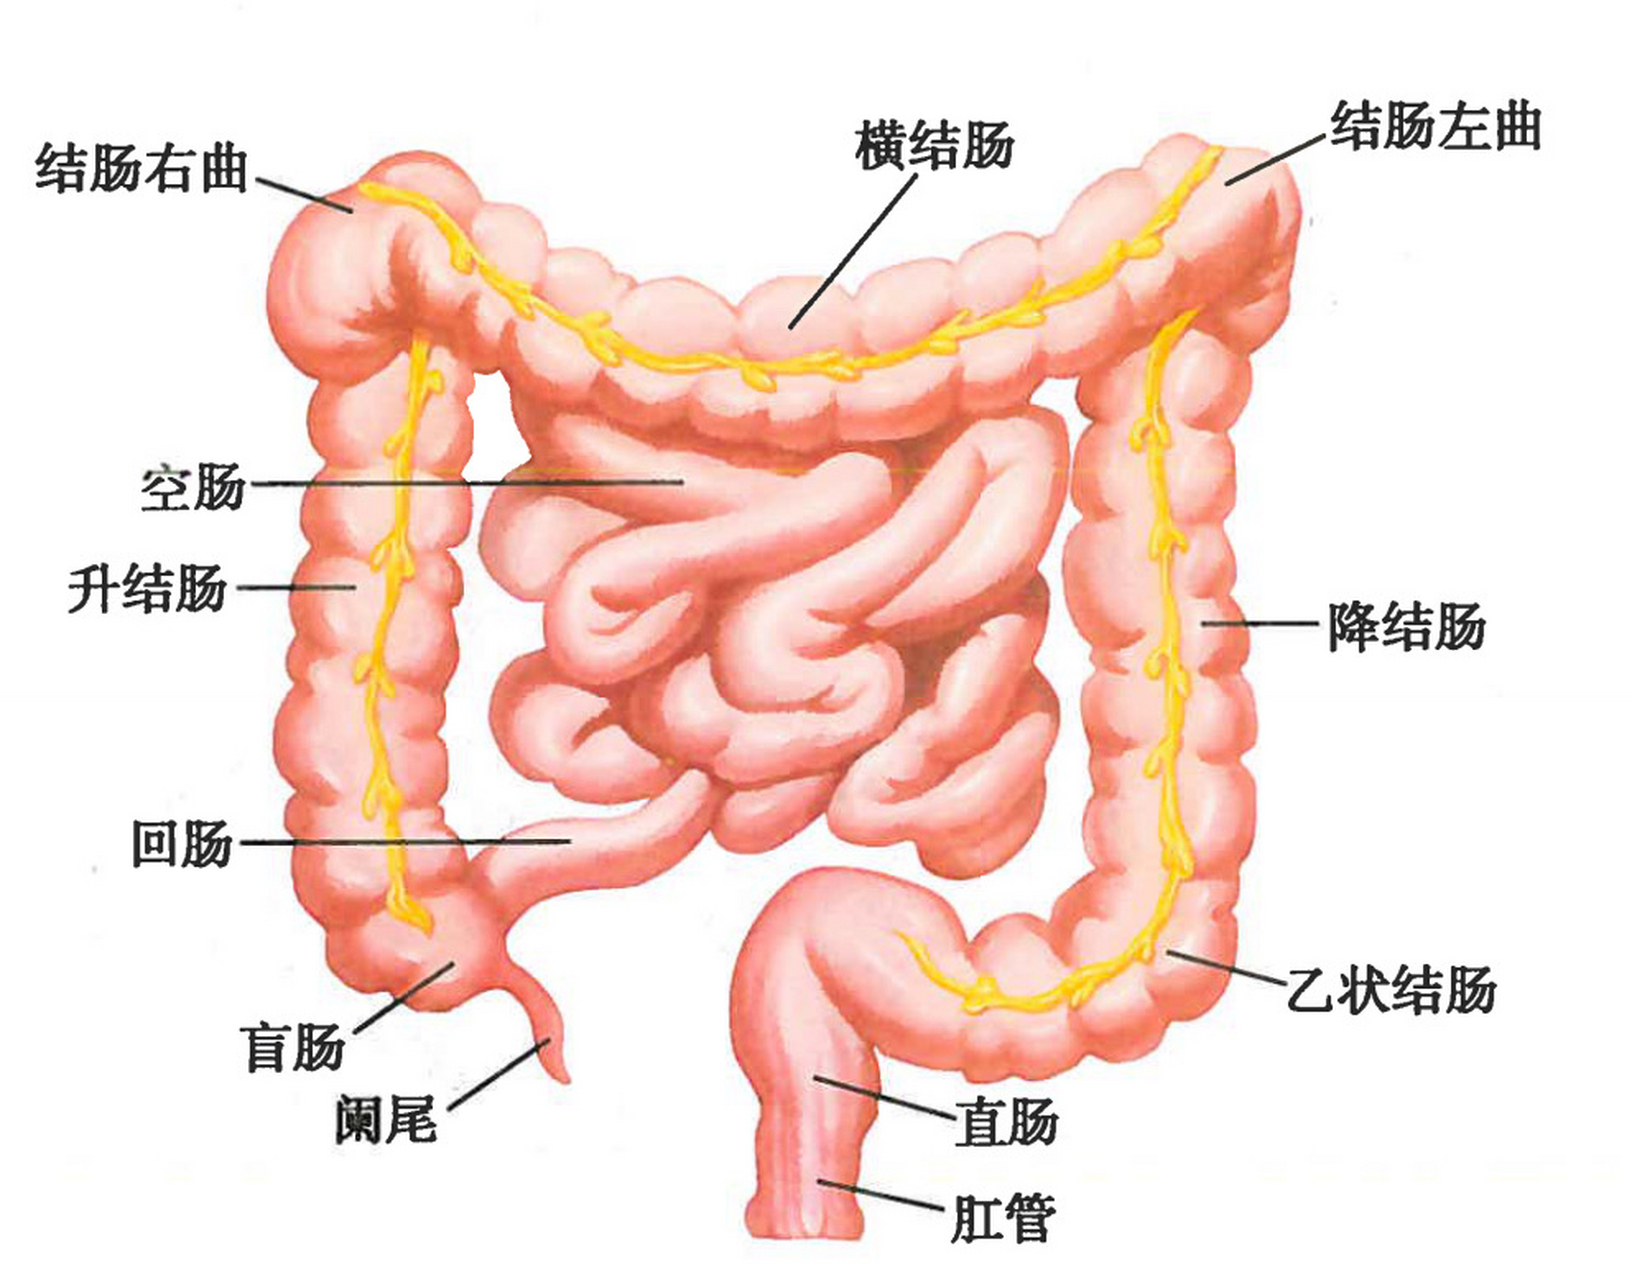 小肠示意图结构图片